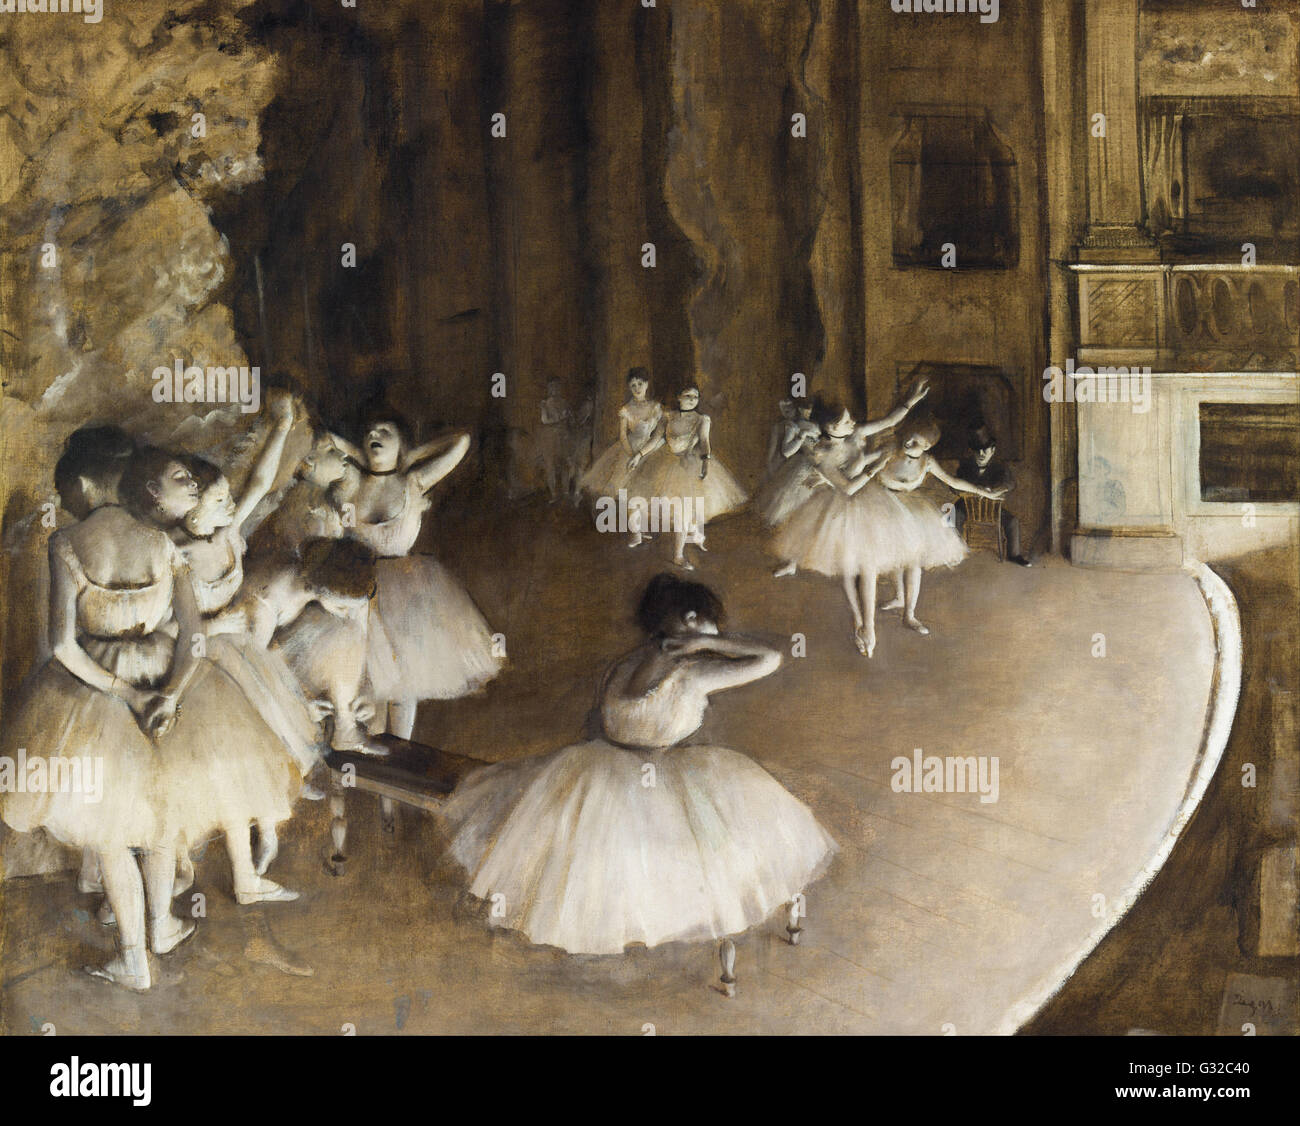 Edgar Degas - Ensayo de ballet en el escenario - Musée d'Orsay, París Foto de stock